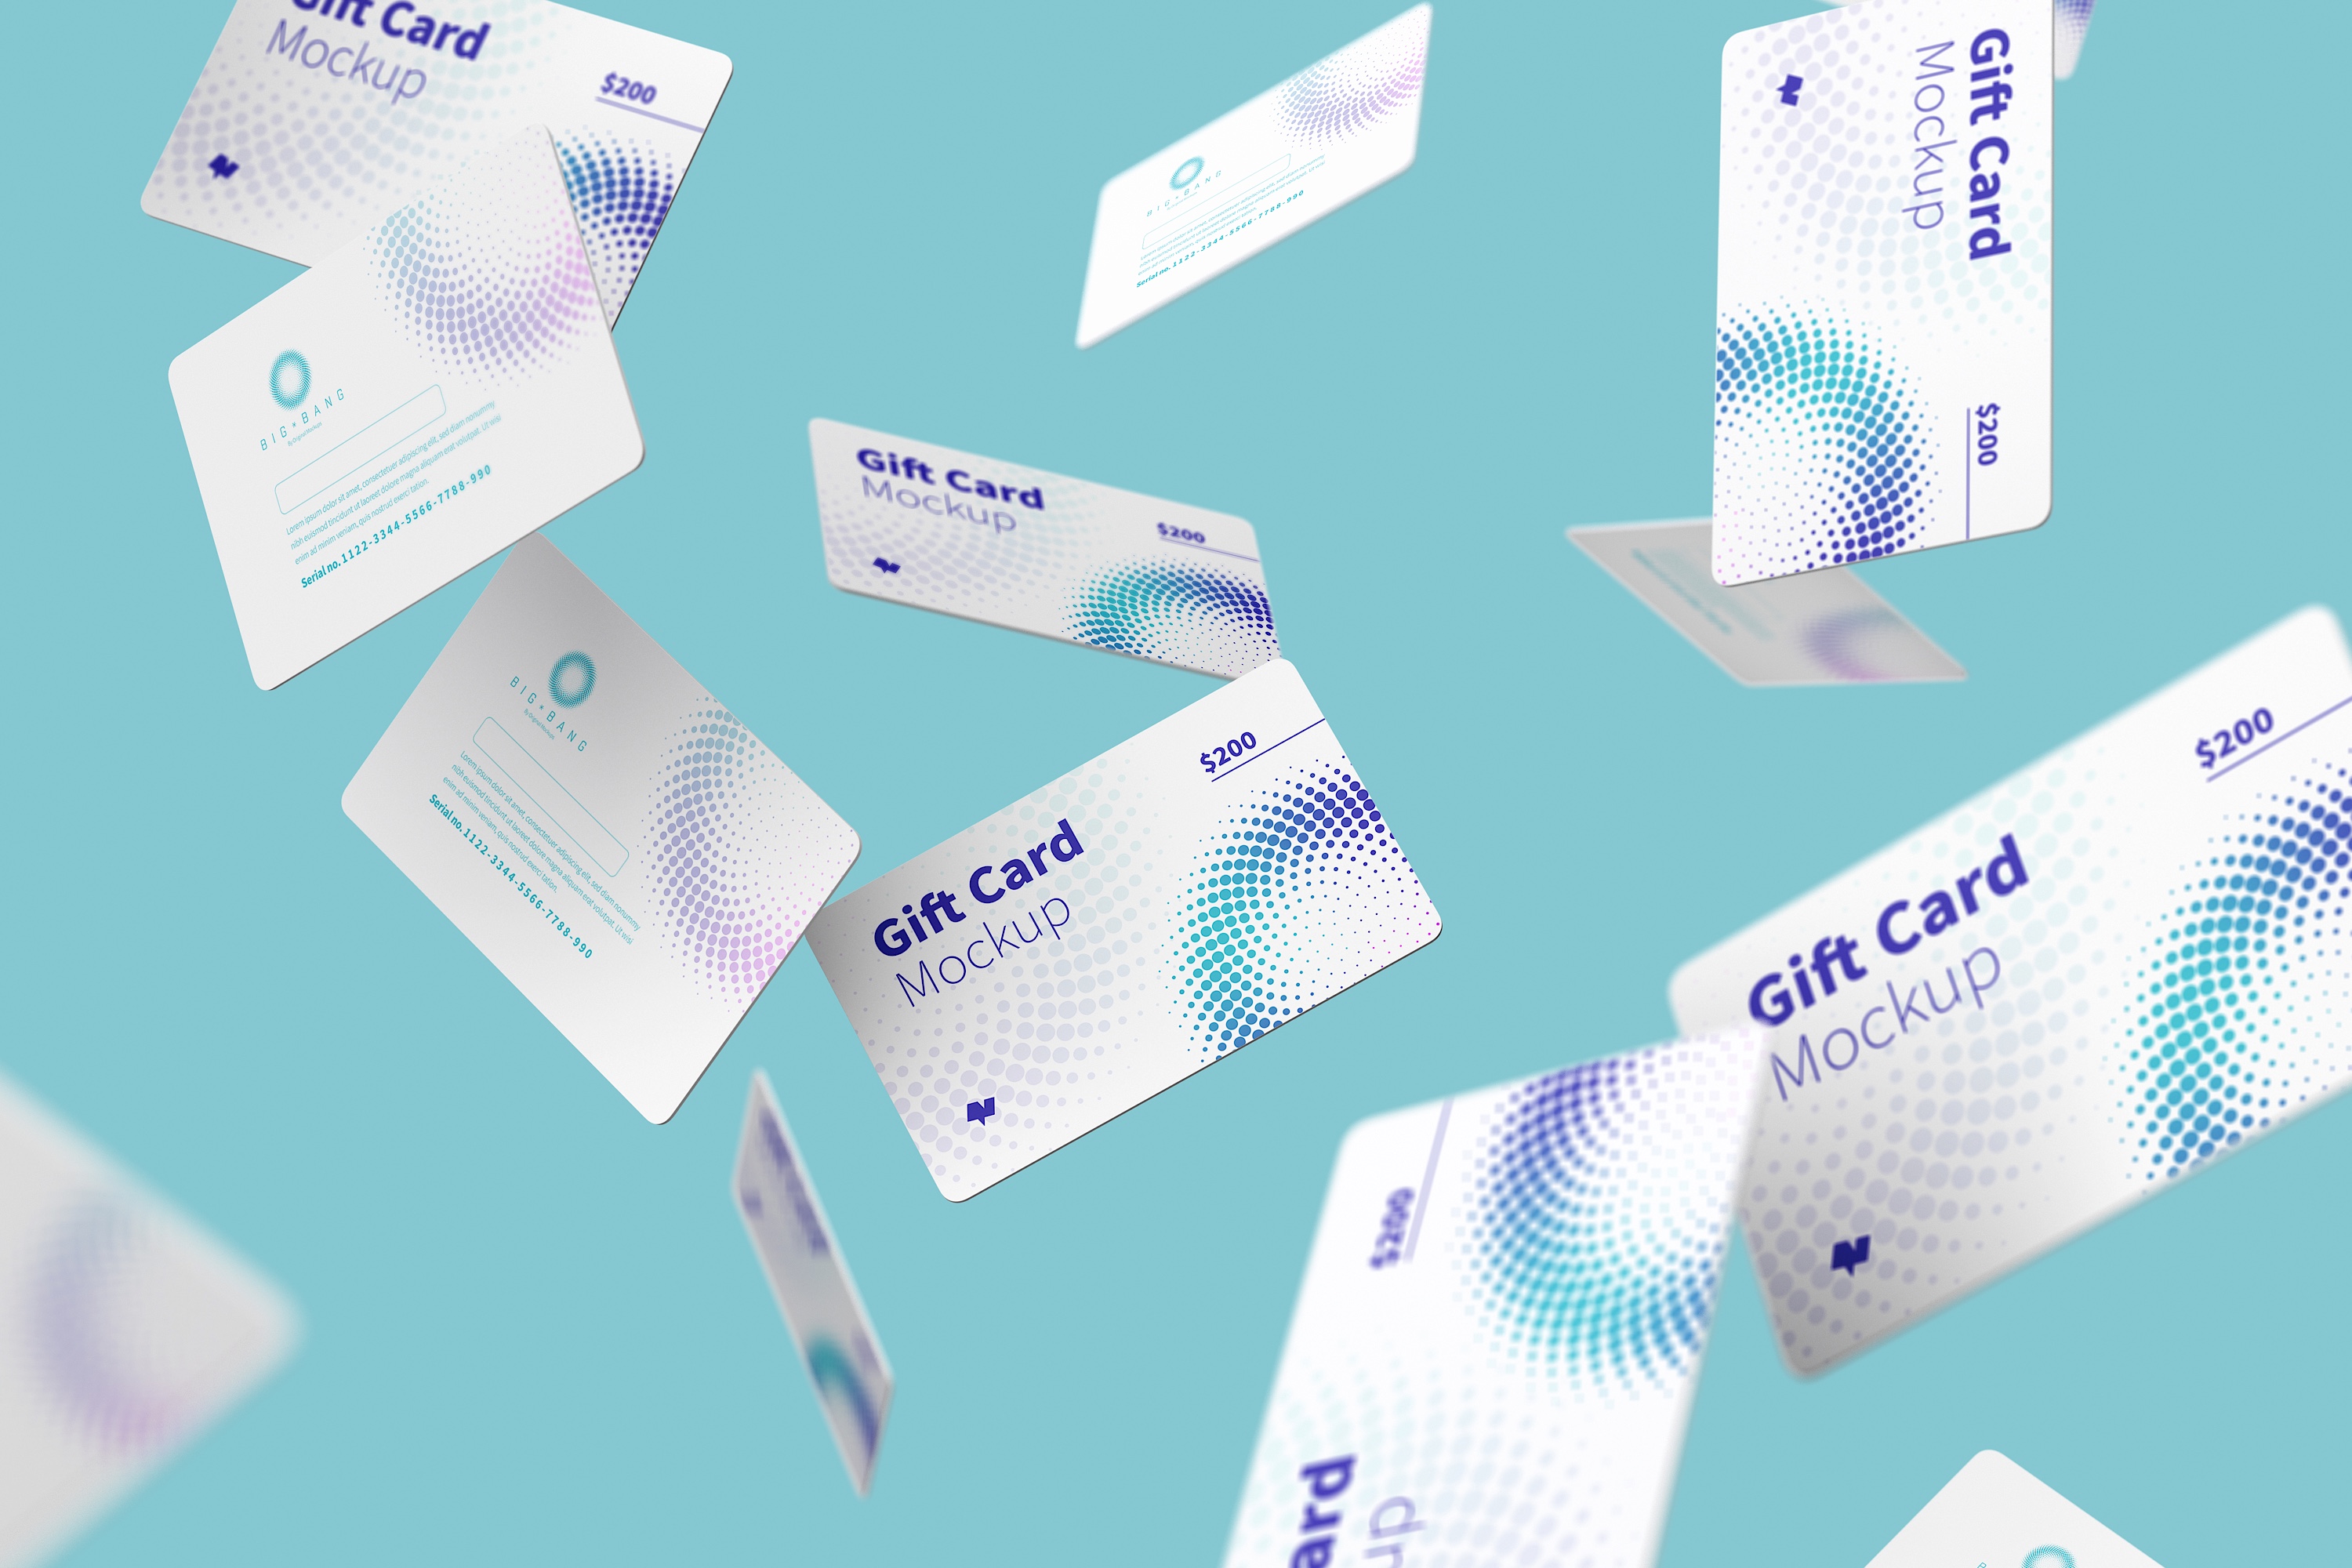 礼品卡积分卡卡片设计设计多视角预览样机模板05 Gift Card Mockup 05插图(3)